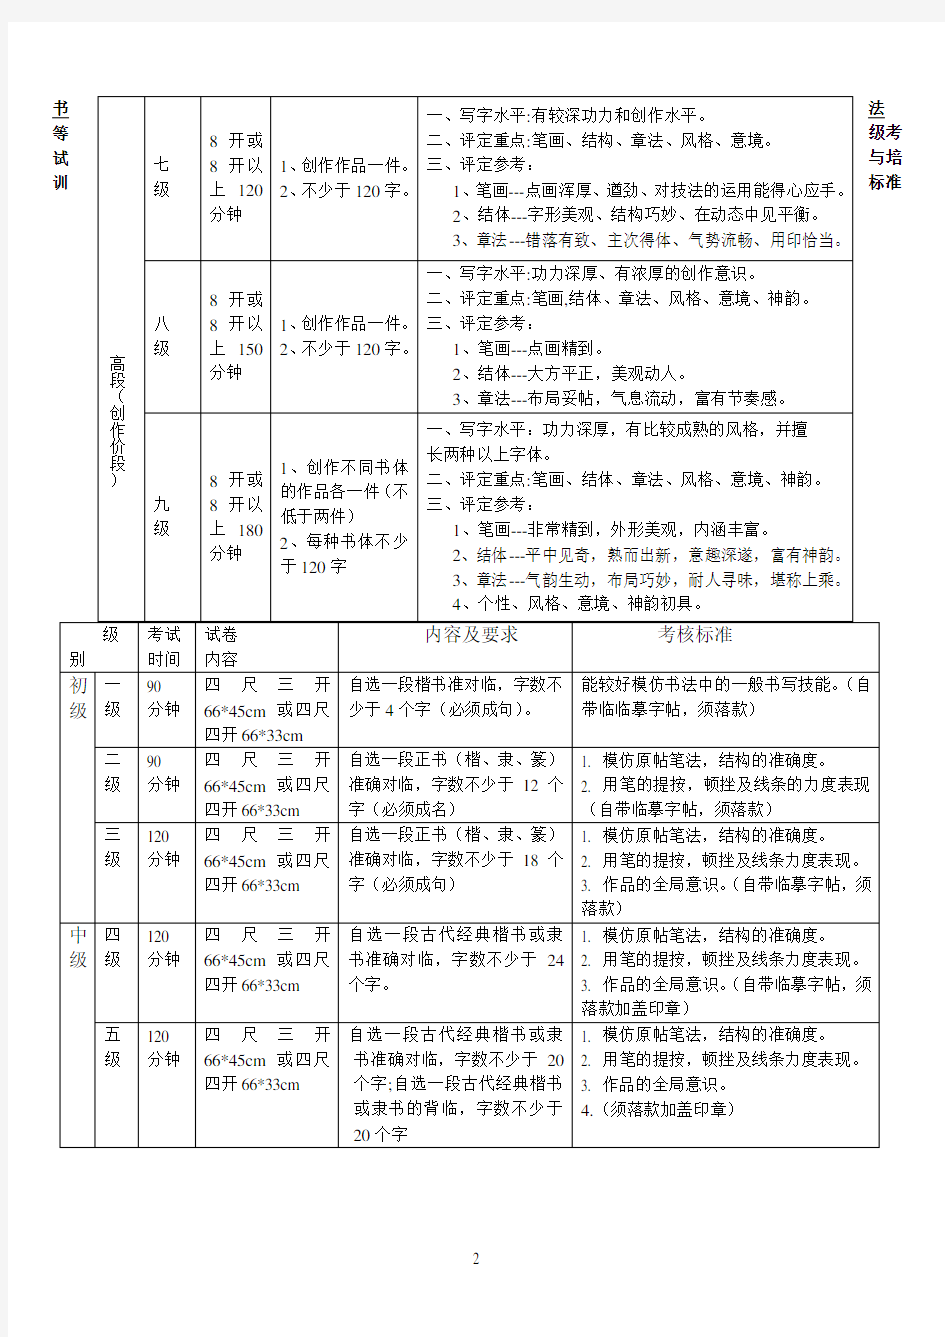 中国美术学院硬笔书法等级考核标准